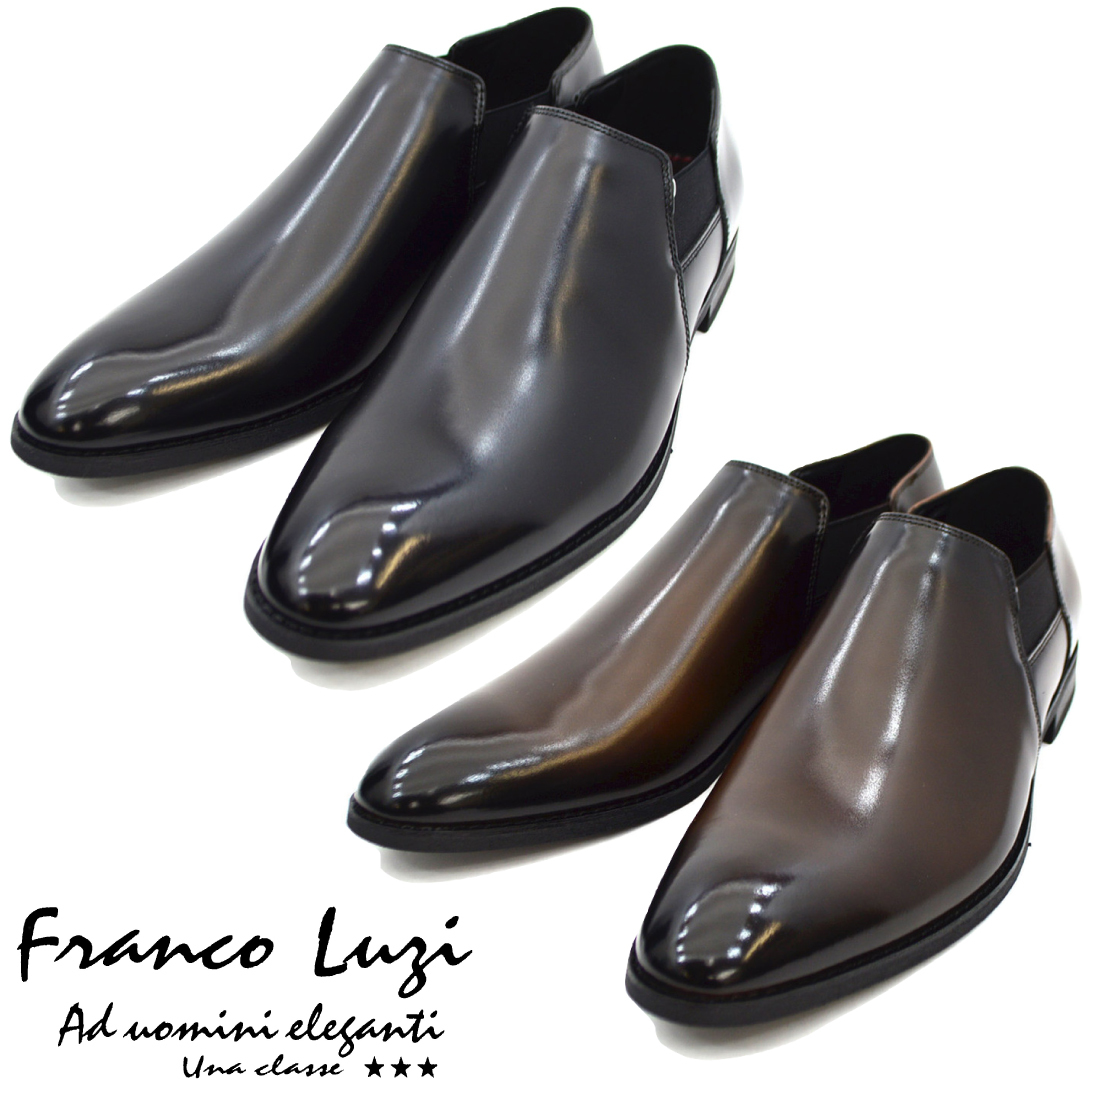 ▲FRANCO LUZI フランコ ルッチ 2003 ビジネスシューズ スリッポン 紳士靴 革靴 メンズ ブラック Black 黒 25.5cm (0910010552-bk-s255)